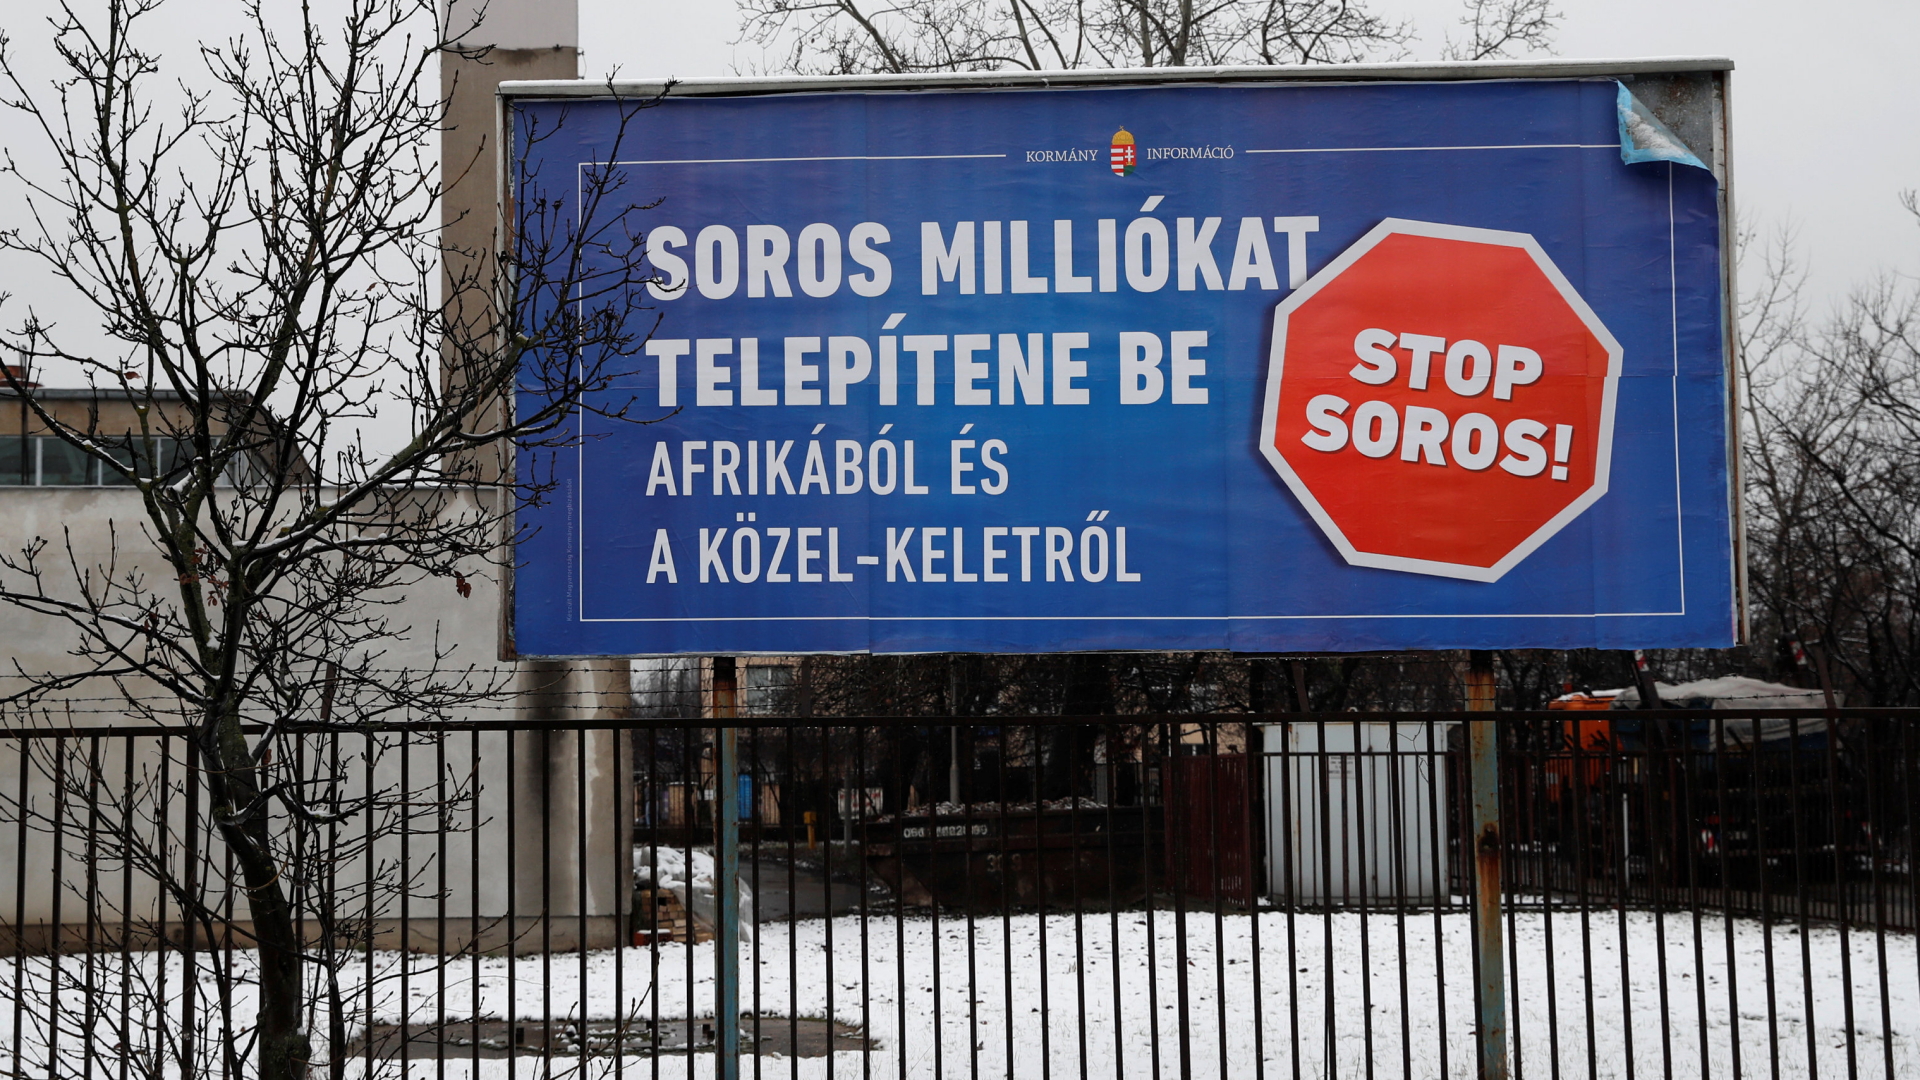 STop-Soros-Plakat: Soros will Millionen aus Afrika und dem Nahen Osten holen